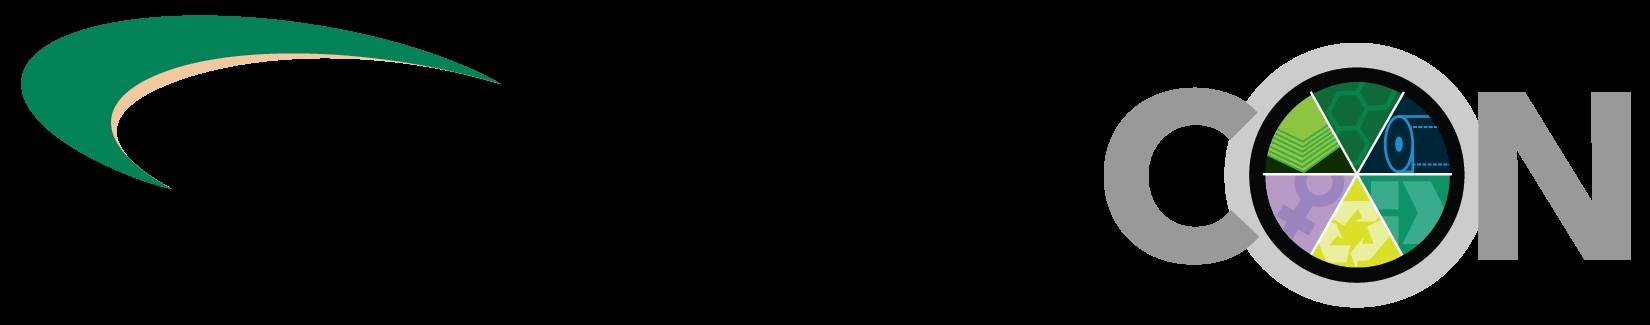 美国俄亥俄州克里夫兰市国际纸业展览会logo